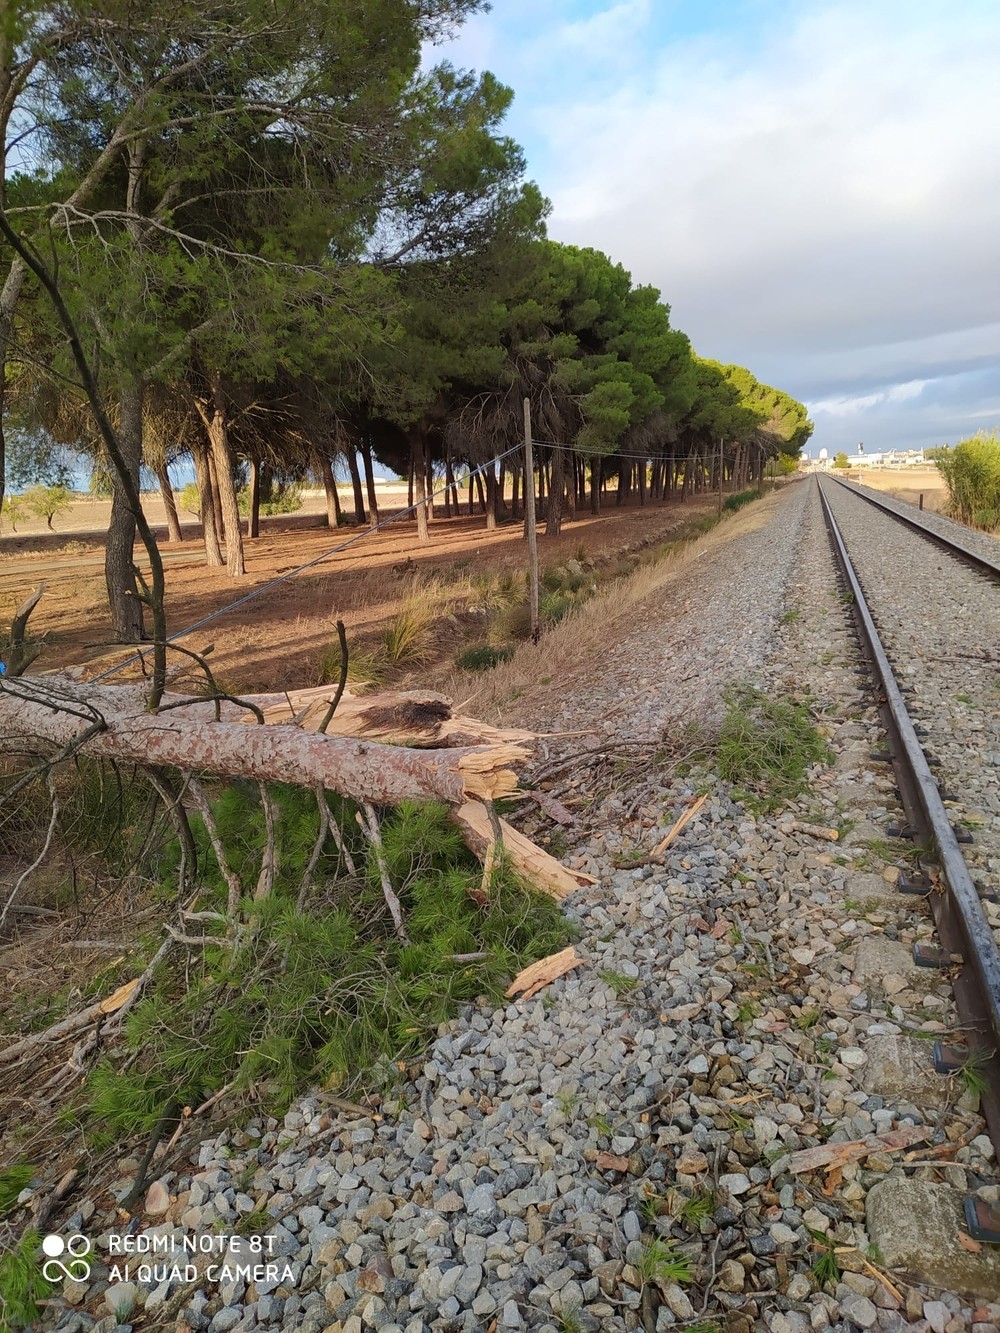 Cae un árbol a las vías cerca de Torrijos sin causar heridos